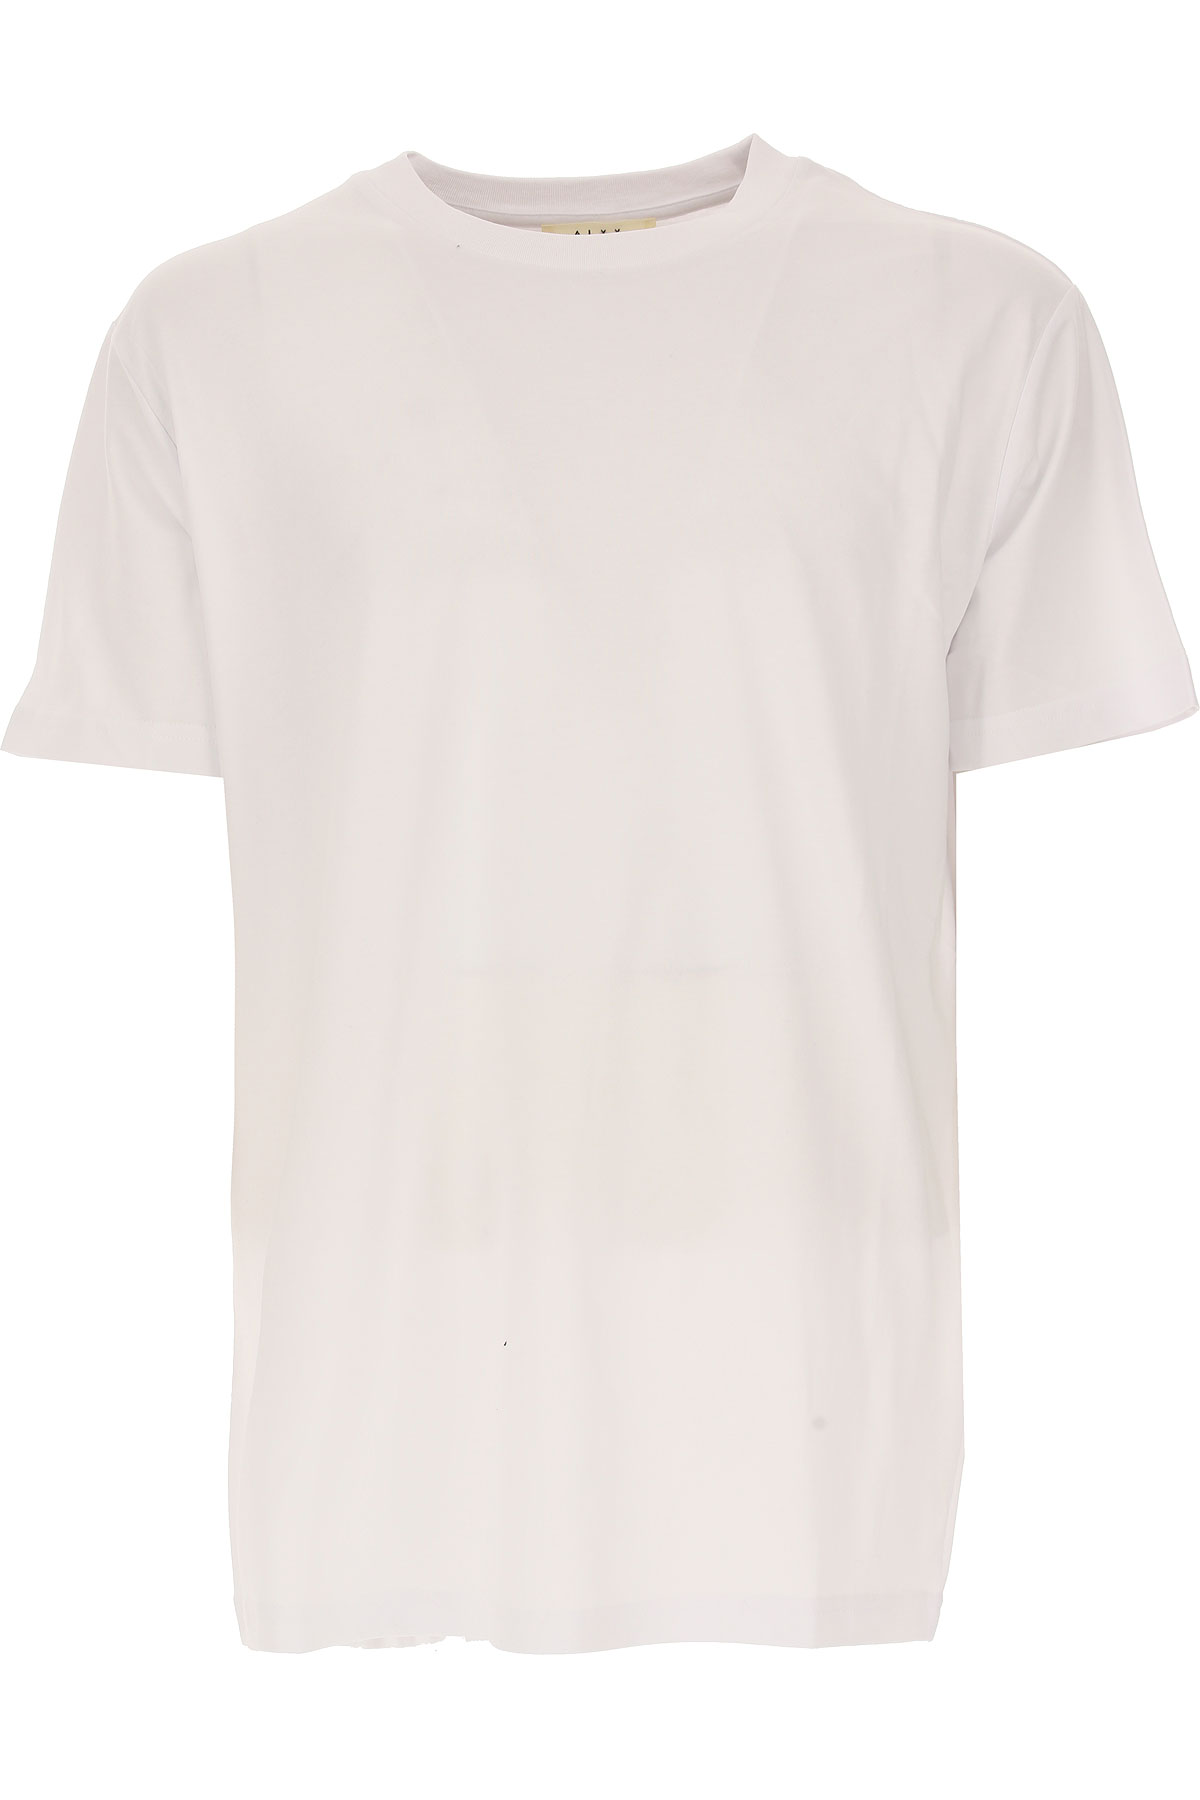 ALYX T-shirt Homme, Blanc, Coton, 2017, L M S XL